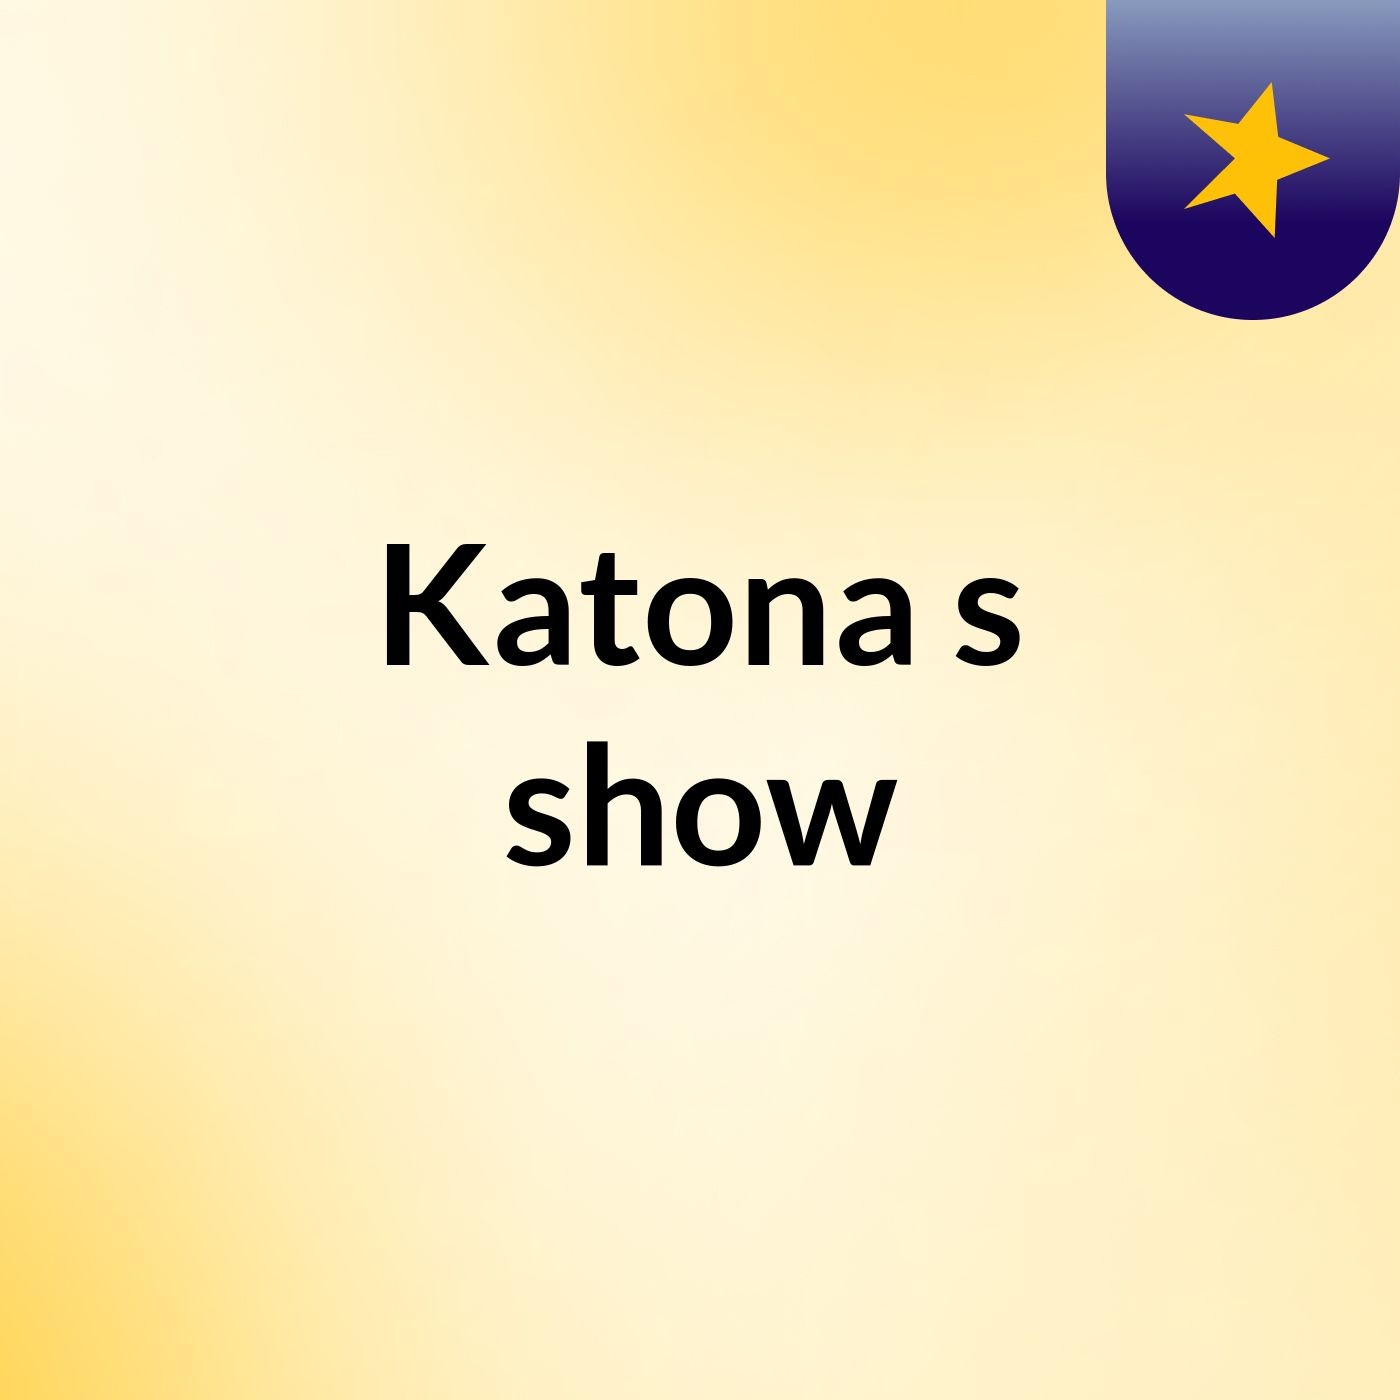 Katona's show